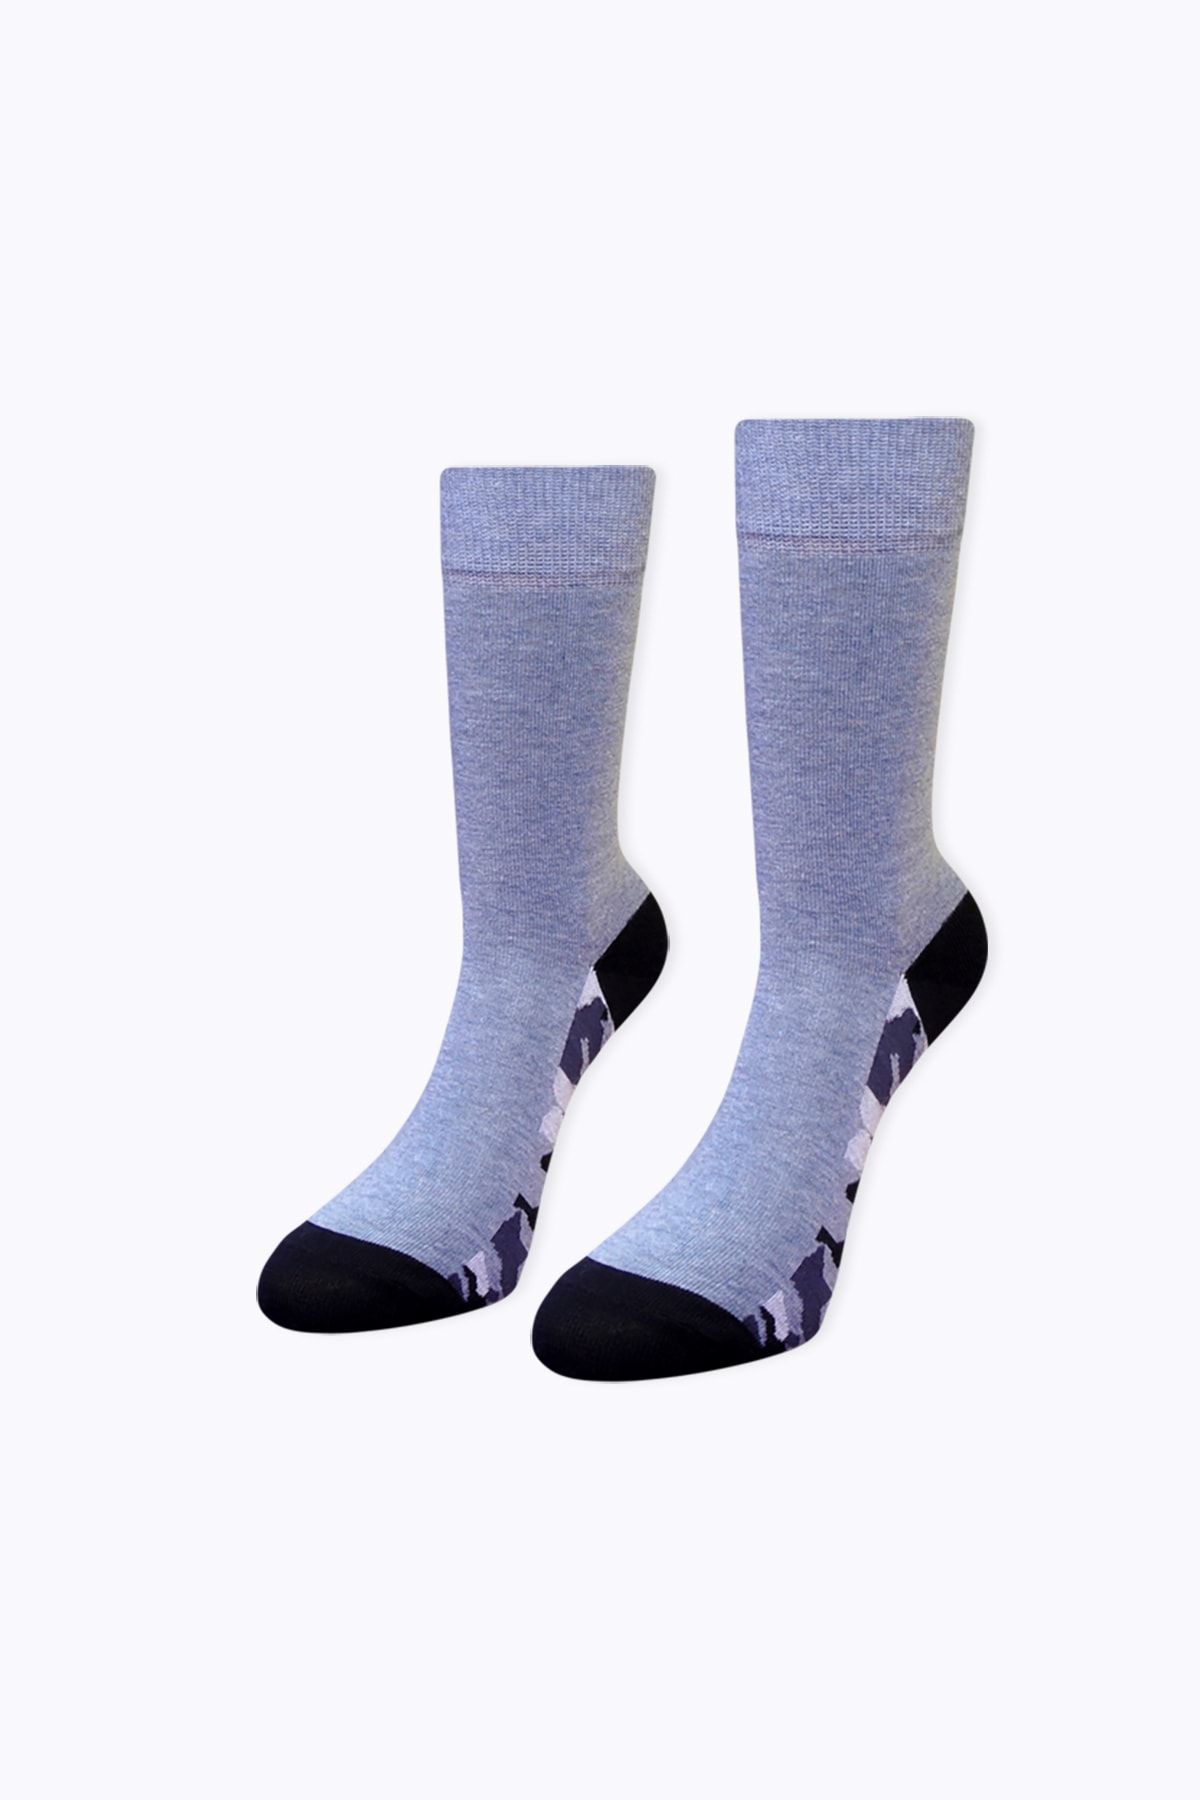 Socks Academy Tabanaltı Kamuflaj Desenli Mavi Çorap